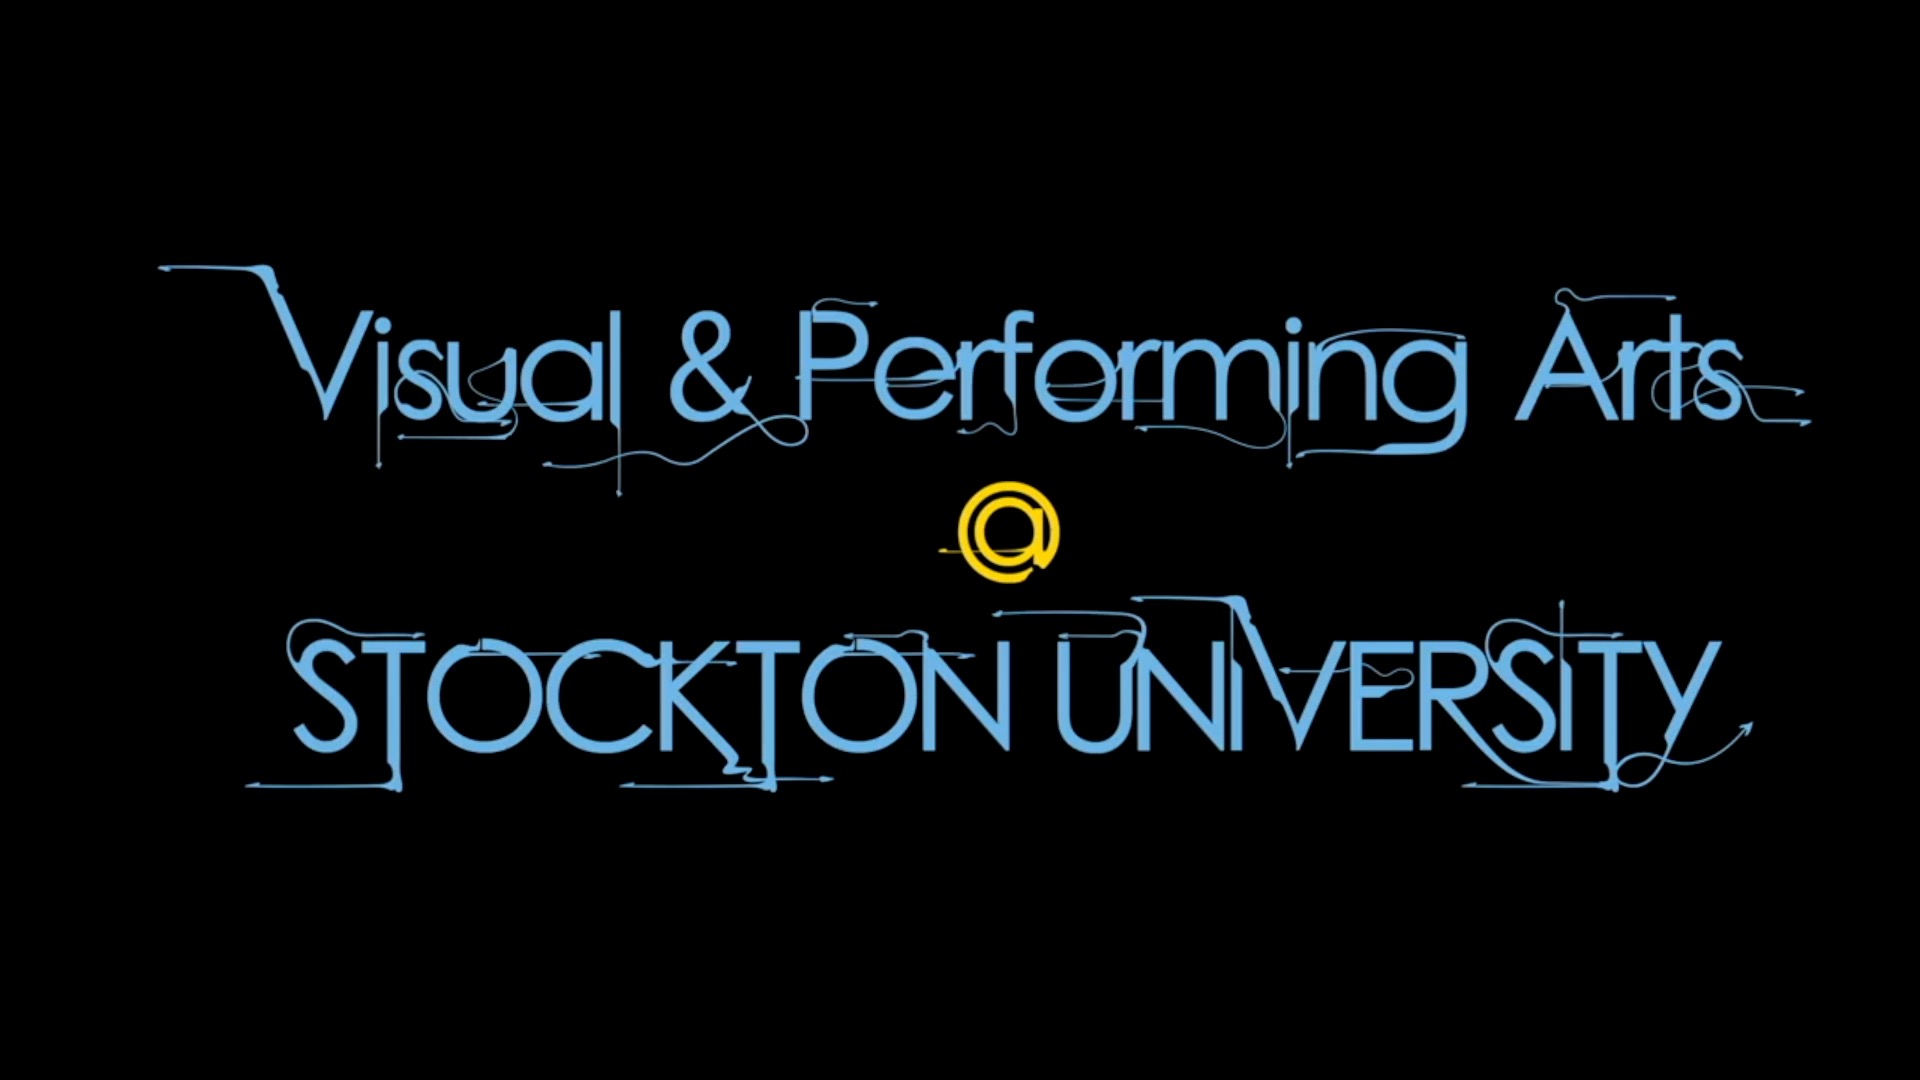 Performing and Visual Arts at Stockton University